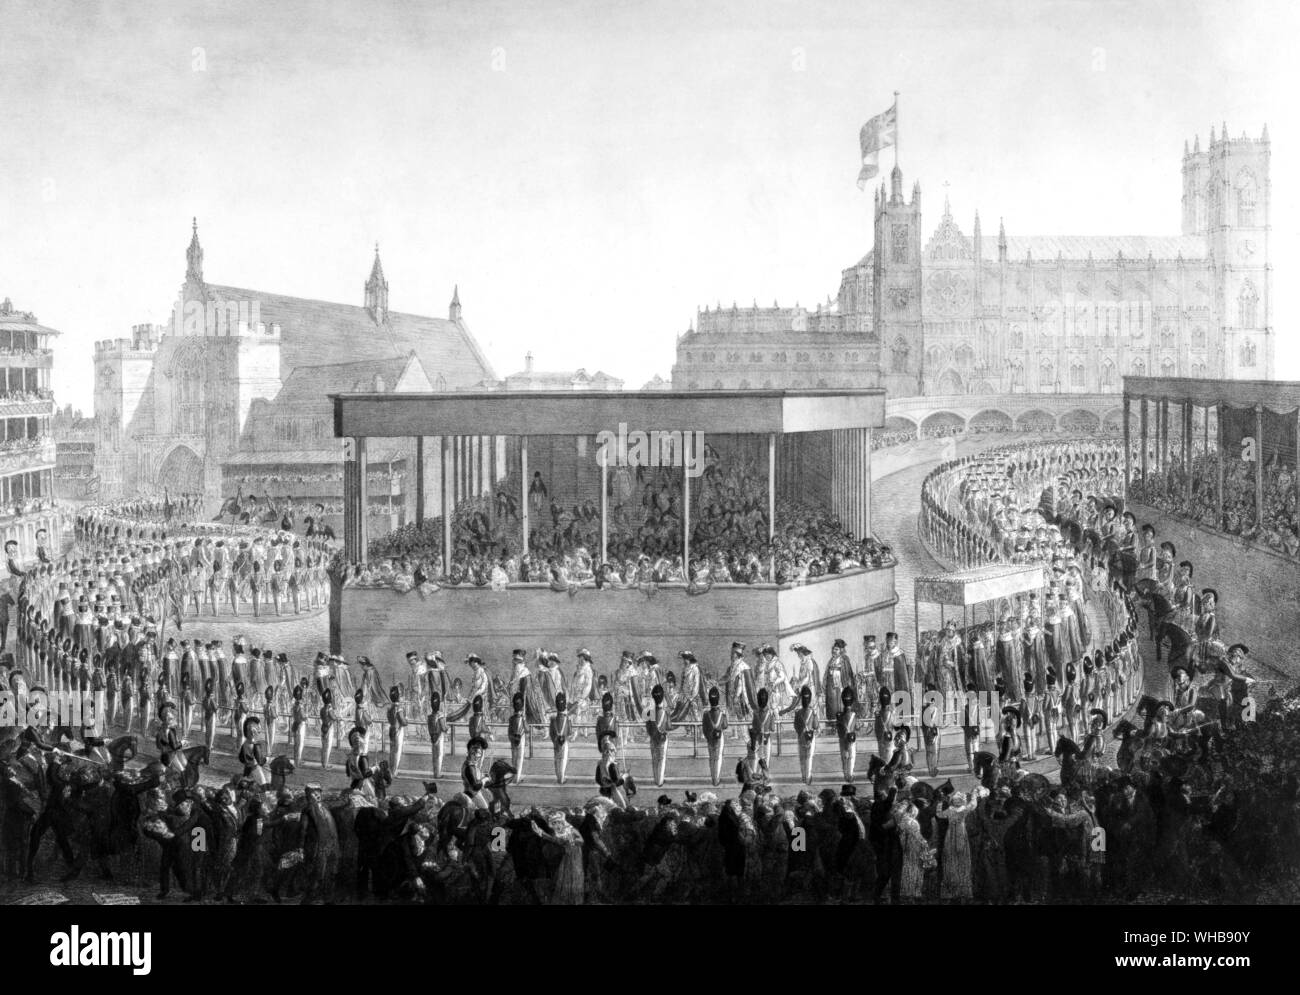 La procesión de la coronación de su majestad el rey George IV 19 de julio de 1821 - extraído de la naturaleza y sobre piedra por G. Schard Weinreb y Douwma Limited, Londres. Foto de stock